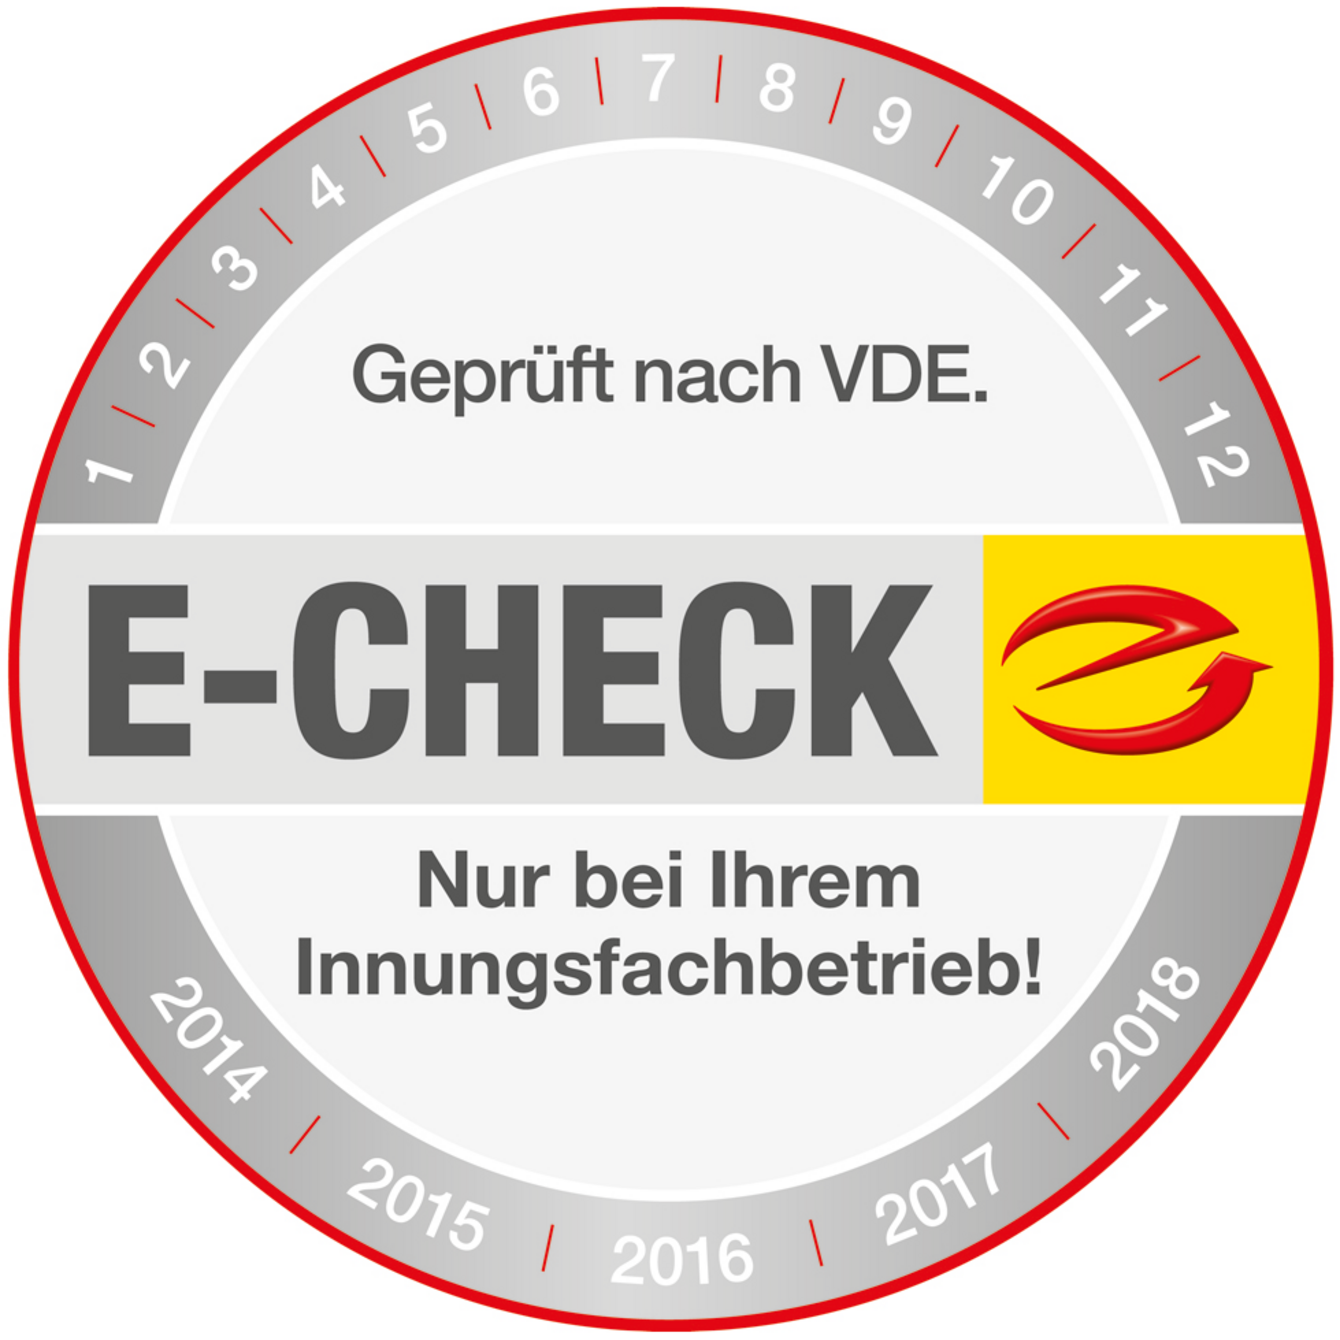 Der E-Check bei Gresch Elektrotechnik Inh. Marcus Becker in Zeitz